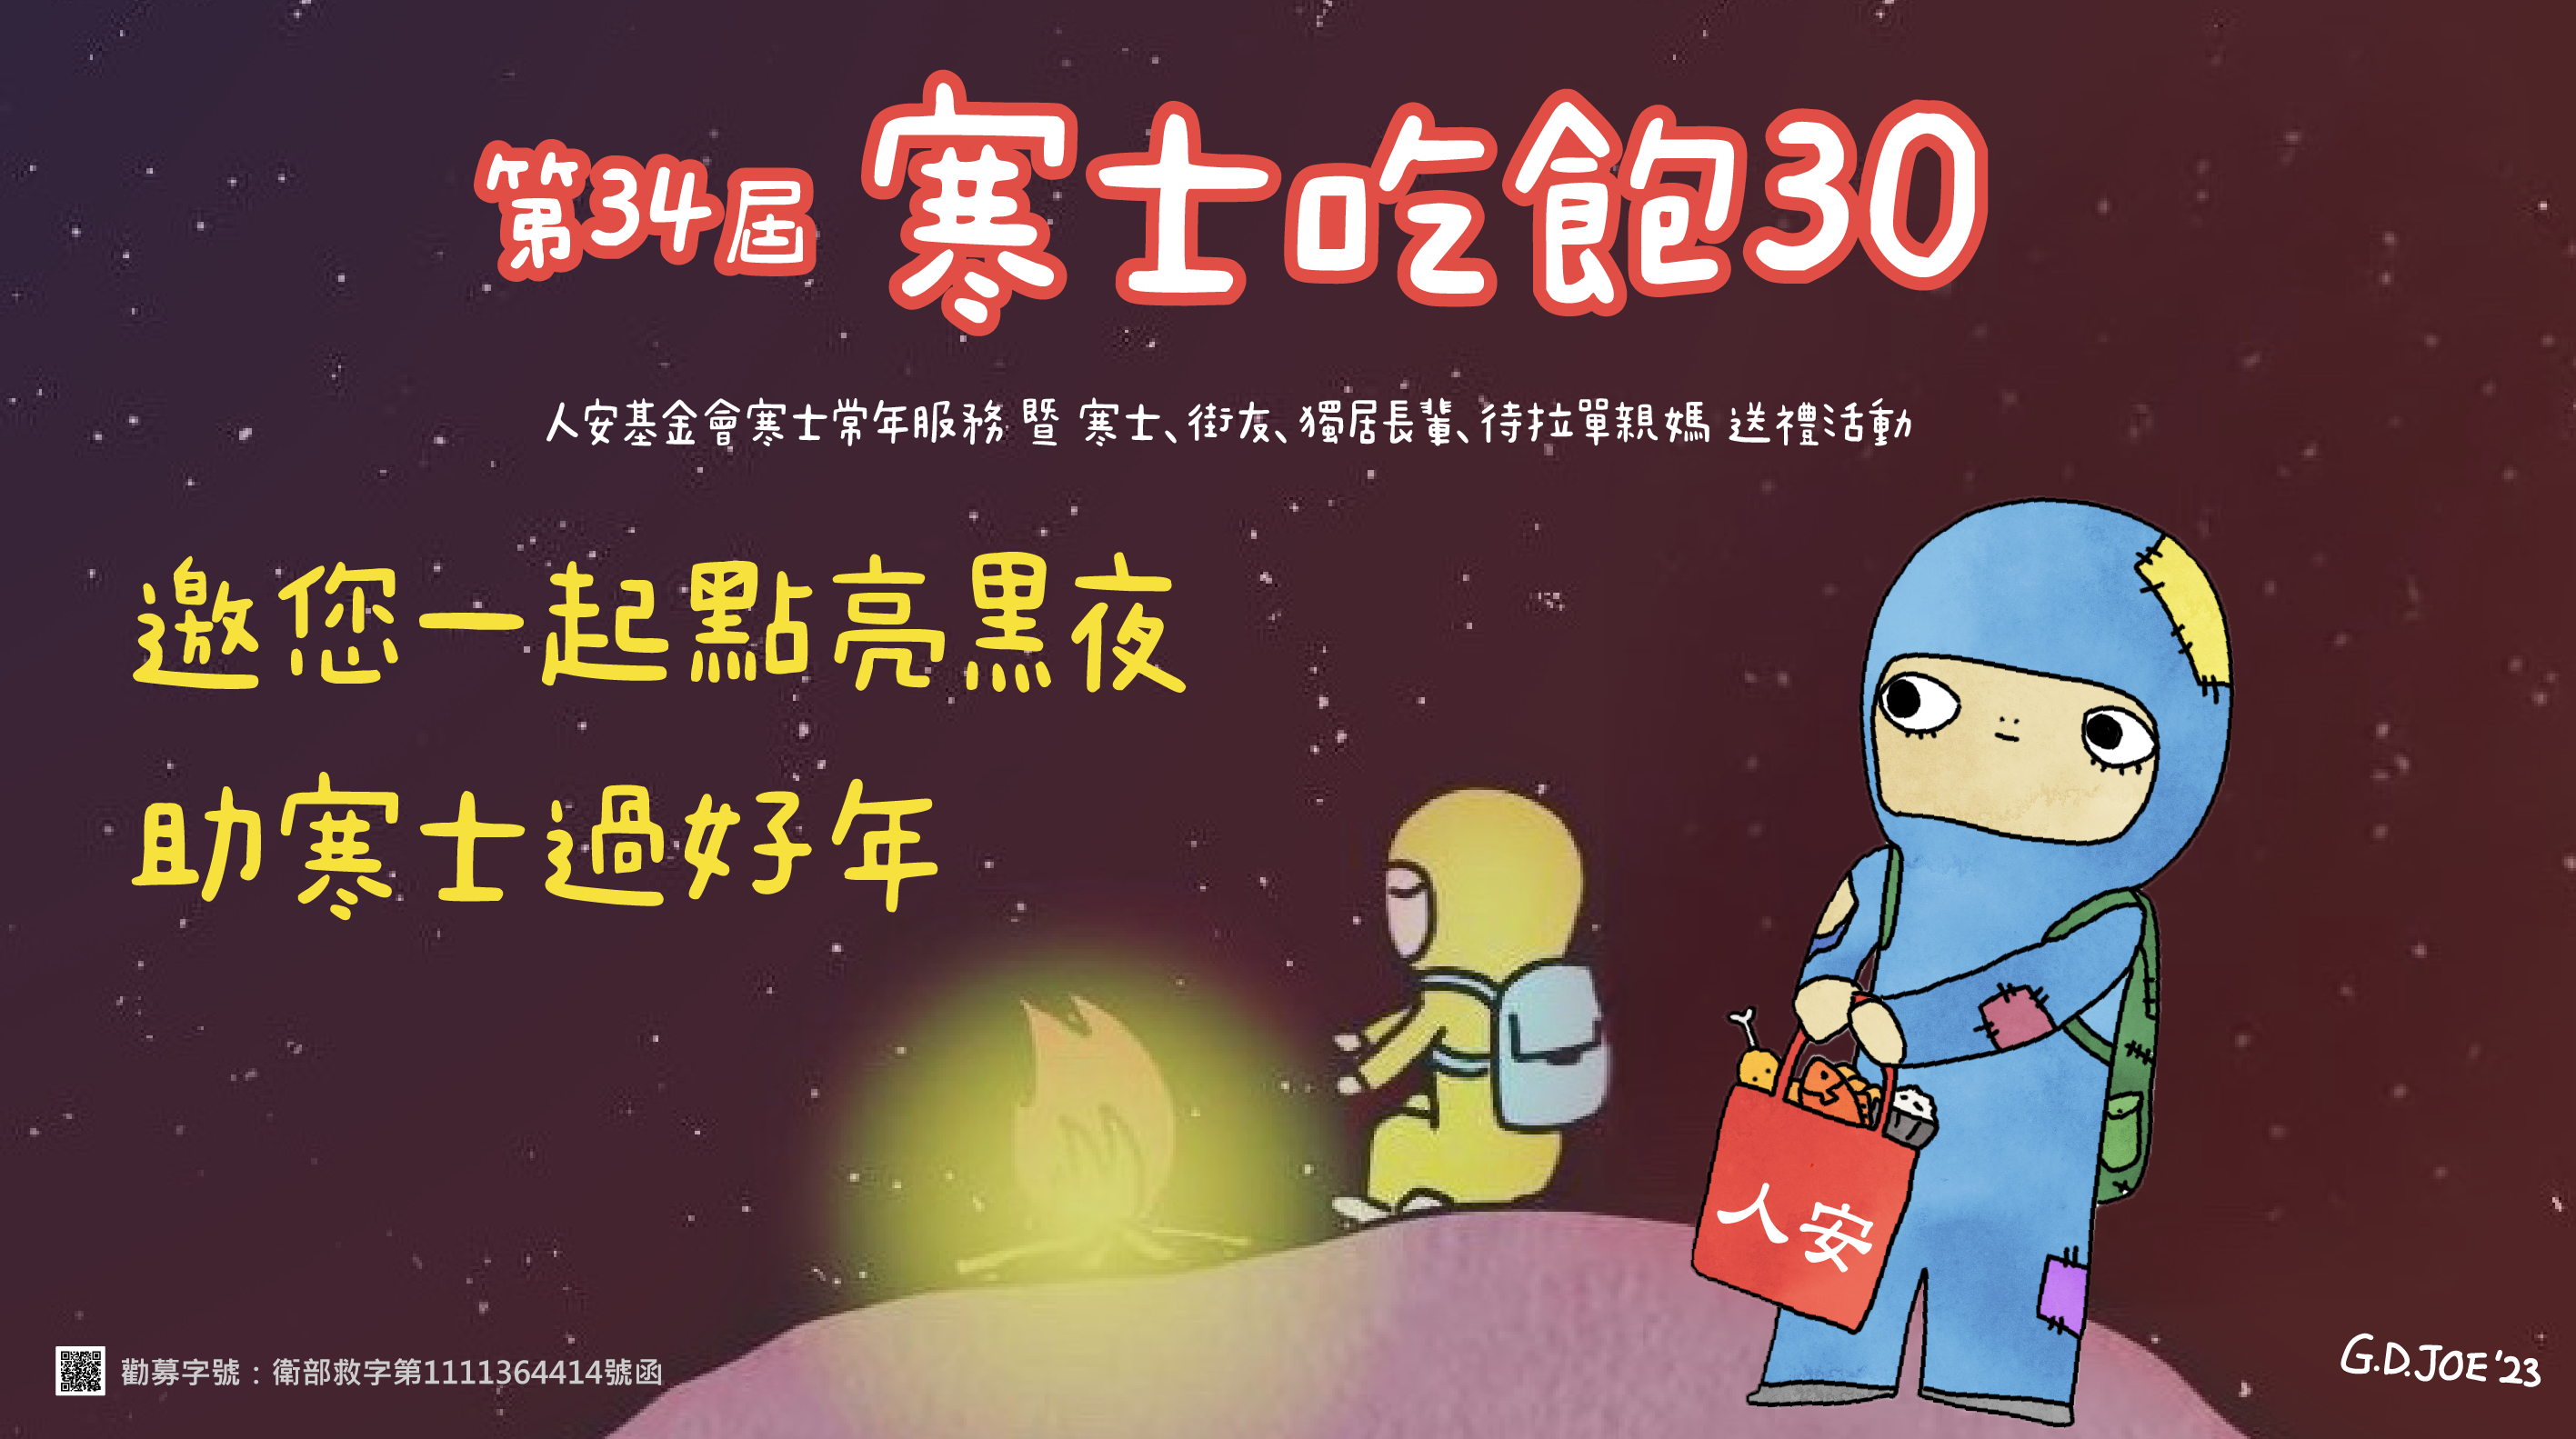 台中平安站「第34屆寒士吃飽30」